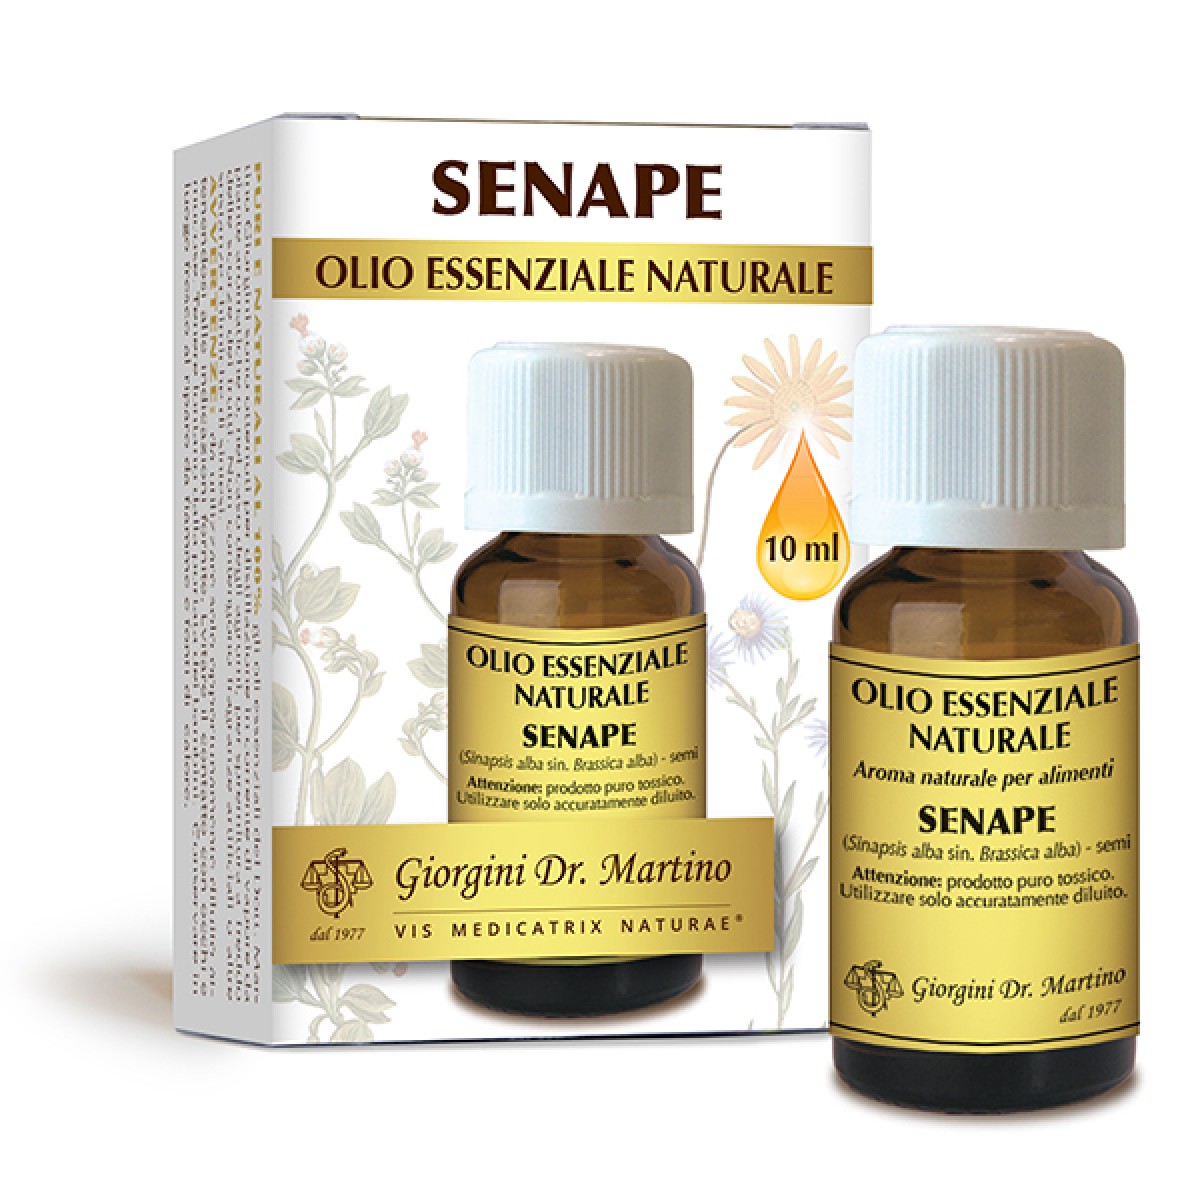 Olio essenziale puro di Senape, Brassica alba, marca Giorgini dr